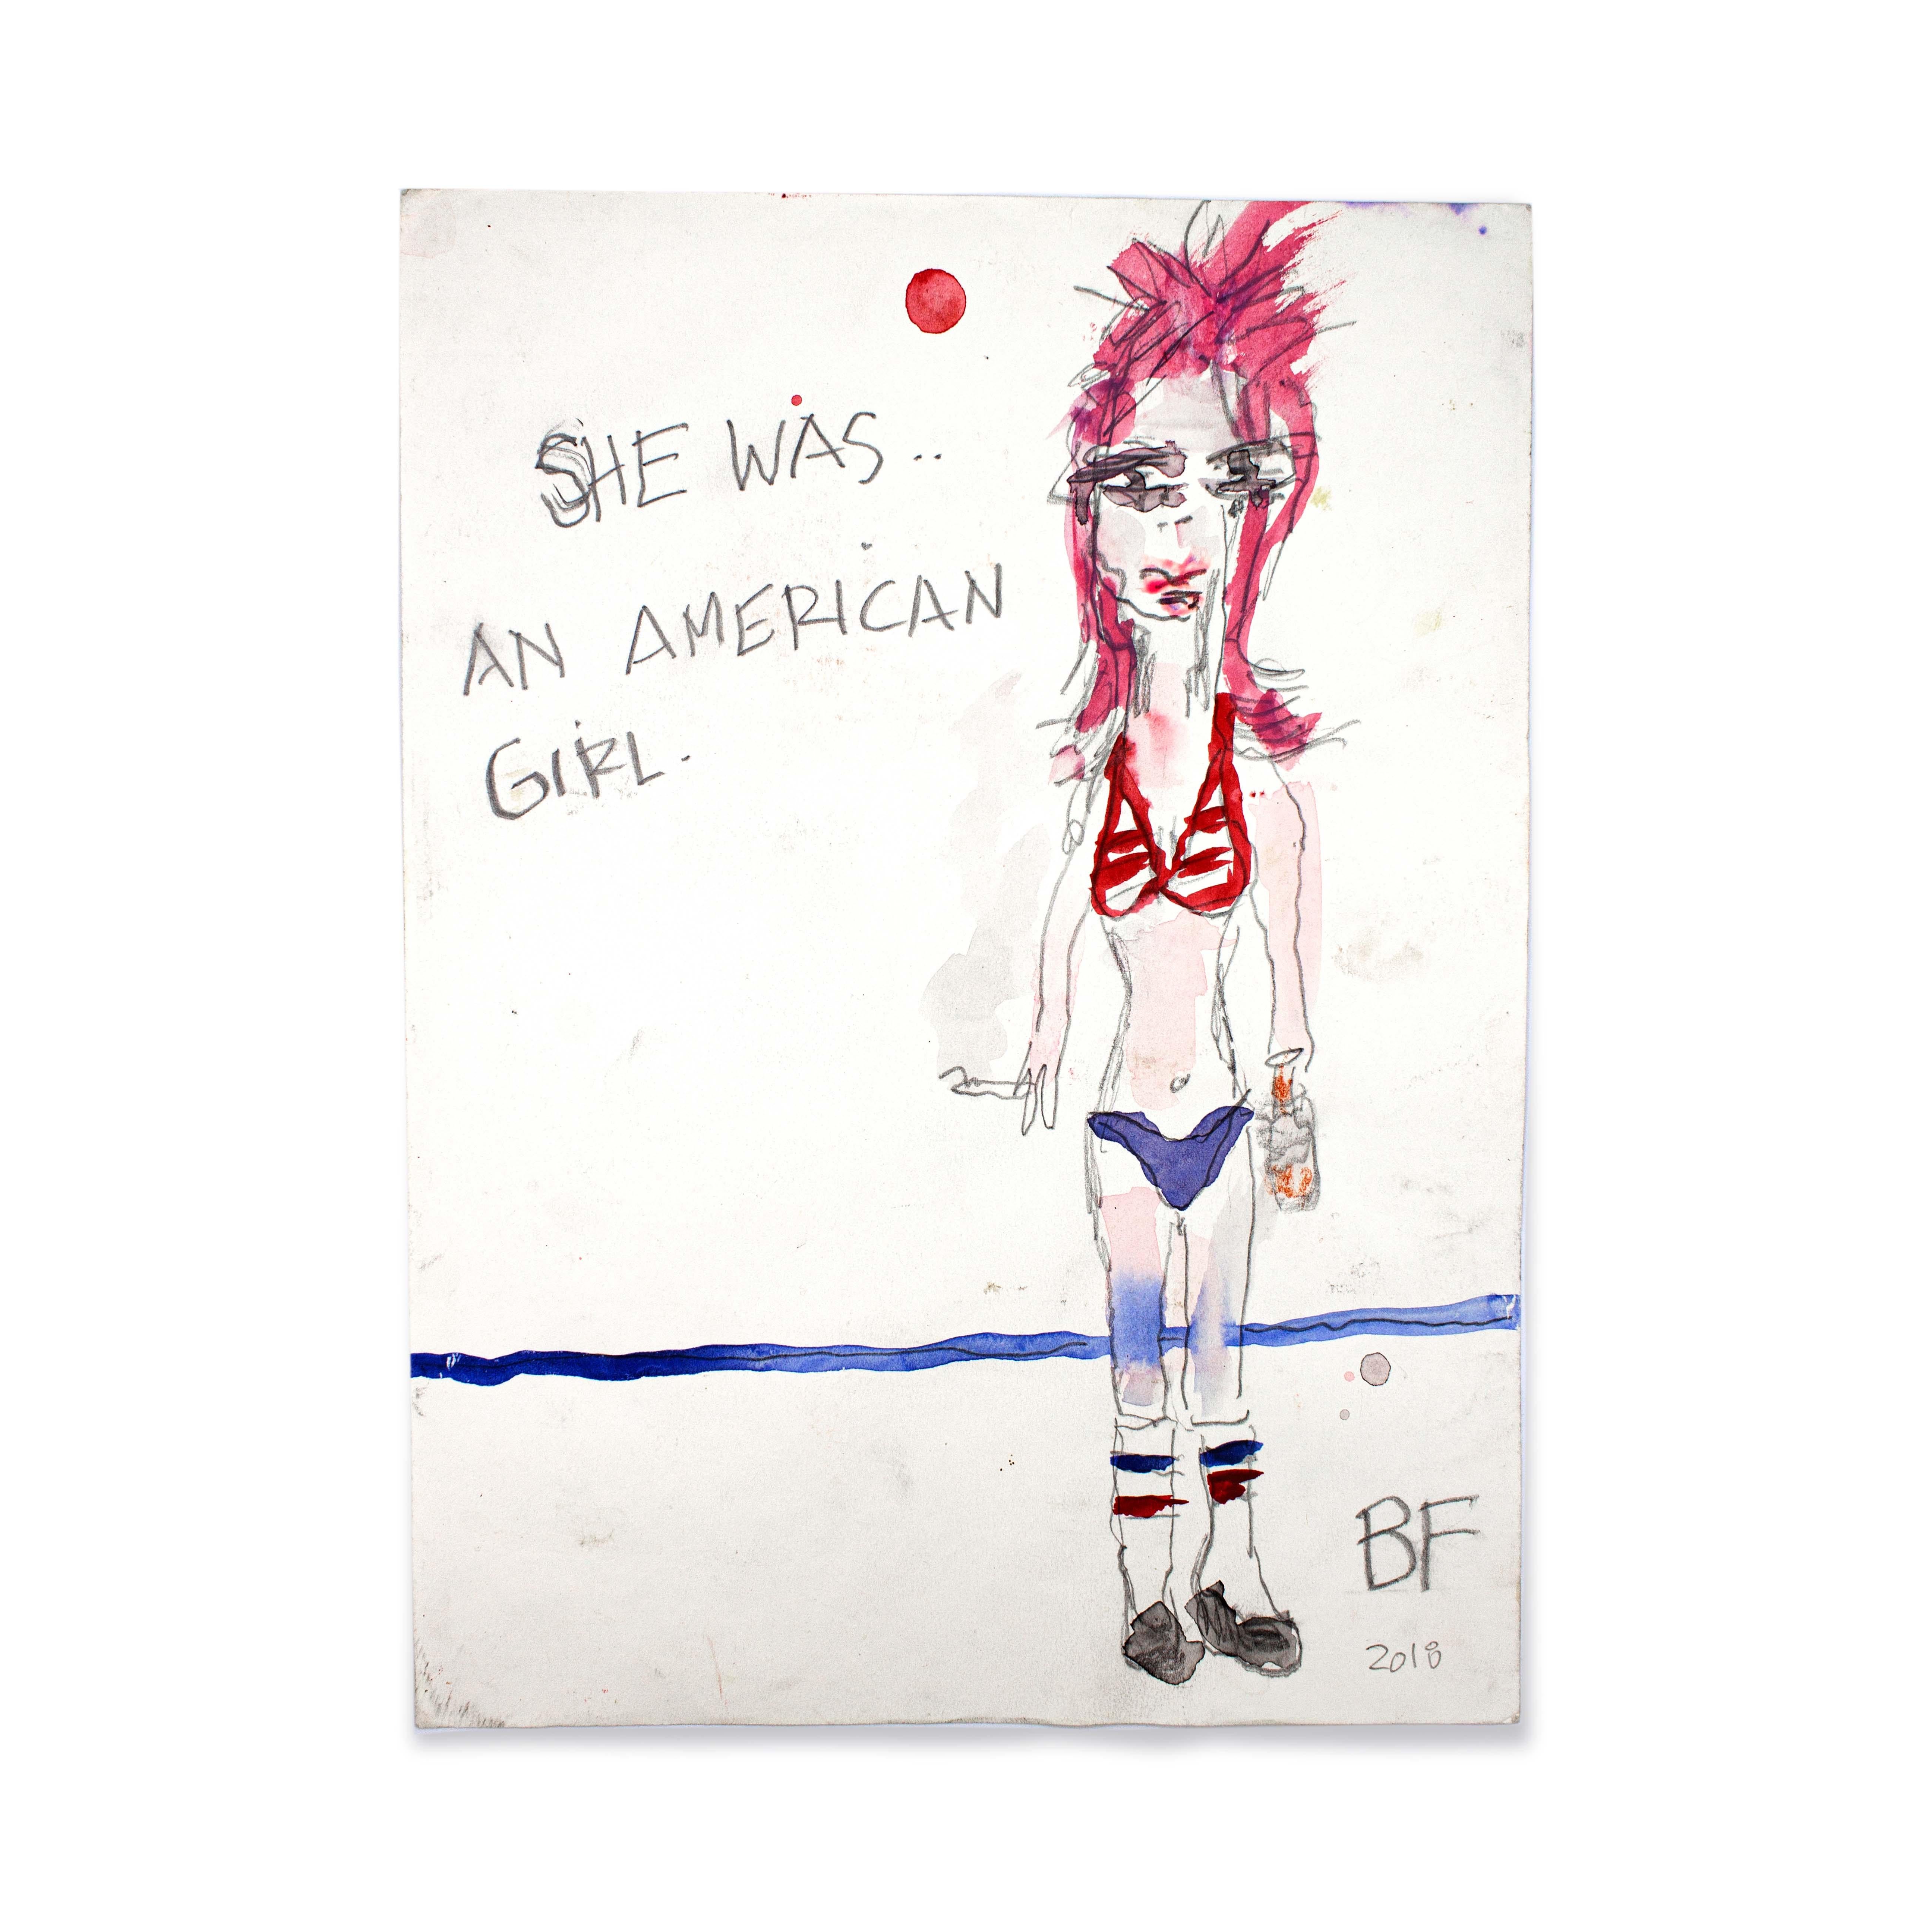 American Girl, 2018

Graphite, encre et aquarelle japonaise sur papier par l'artiste Brad Fisher. Non encadré.

12 × 9 in

L'expédition n'est pas incluse. Voir nos politiques d'expédition. Veuillez nous contacter pour obtenir un devis d'expédition